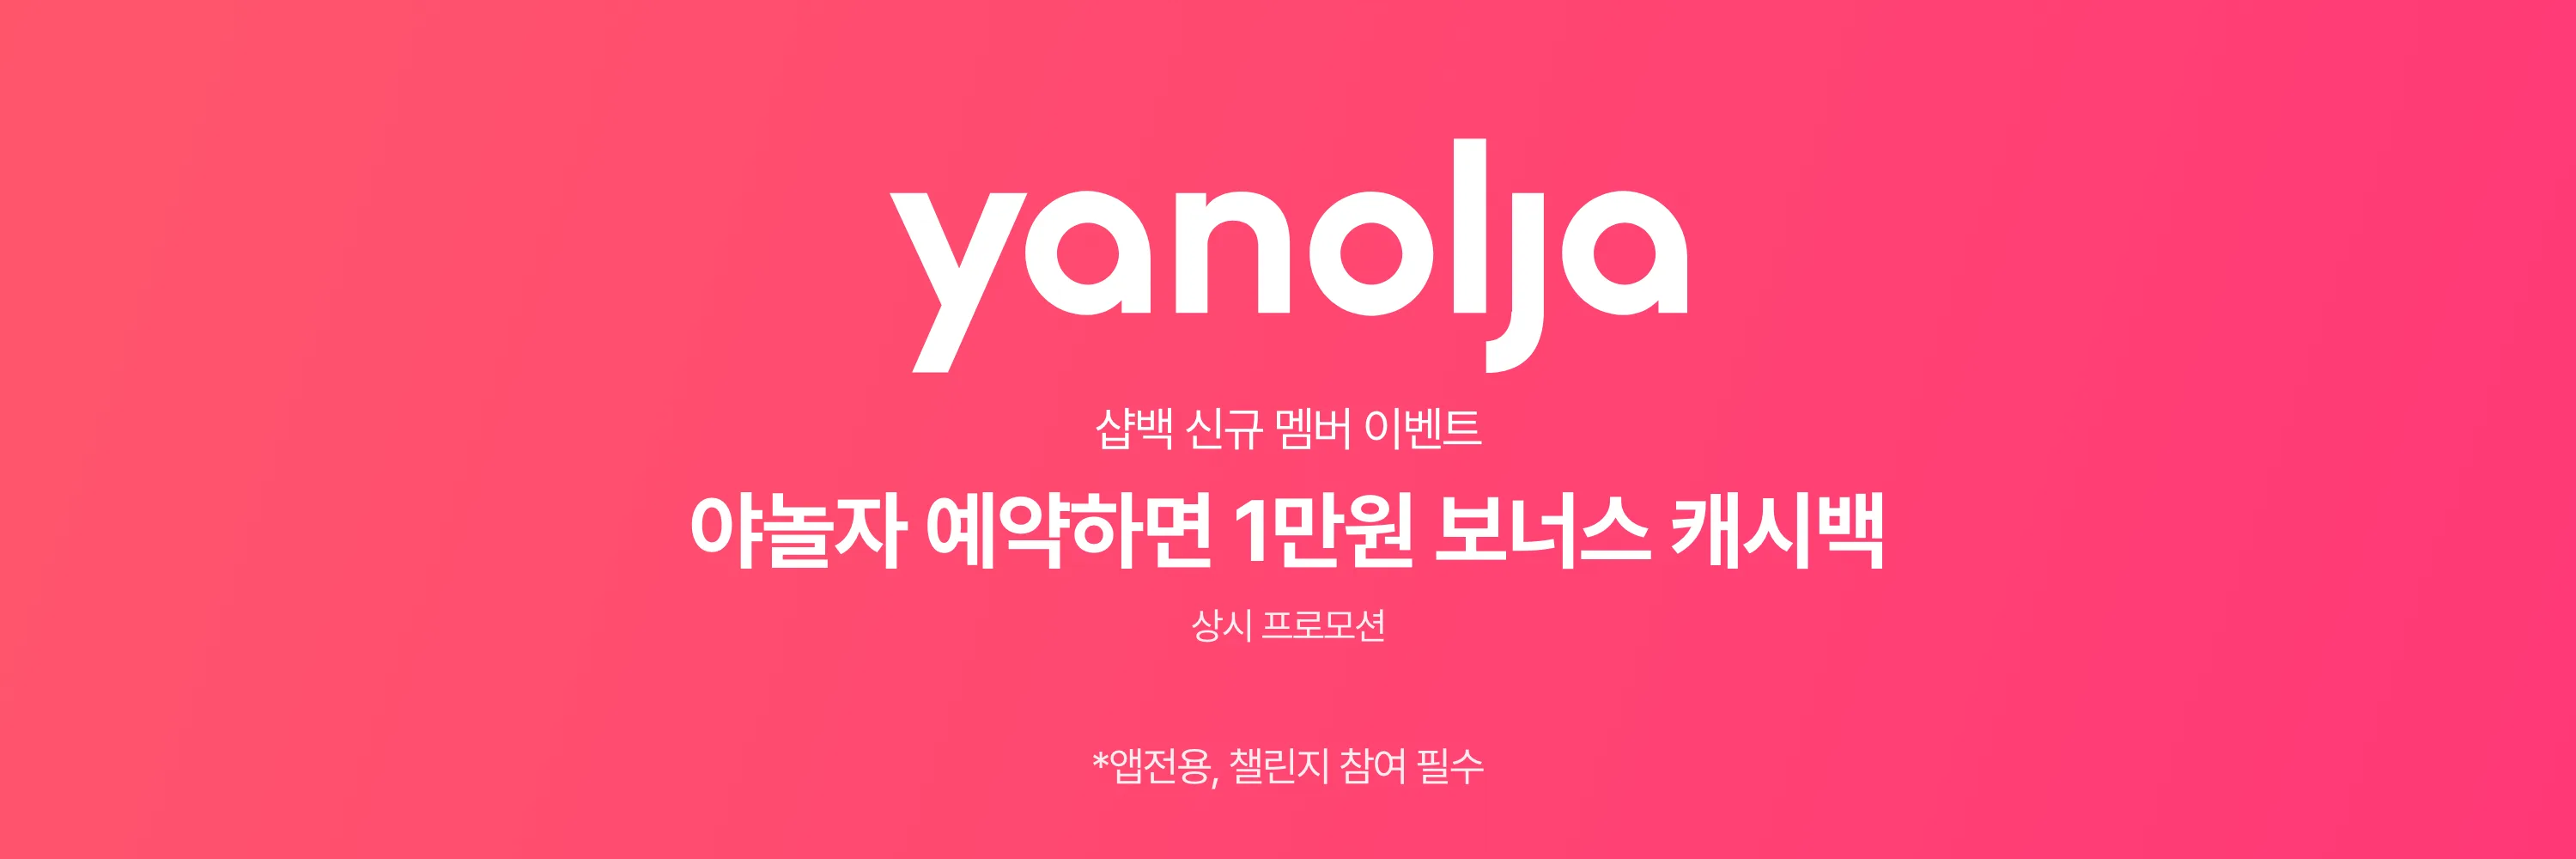 yanolja_event_header